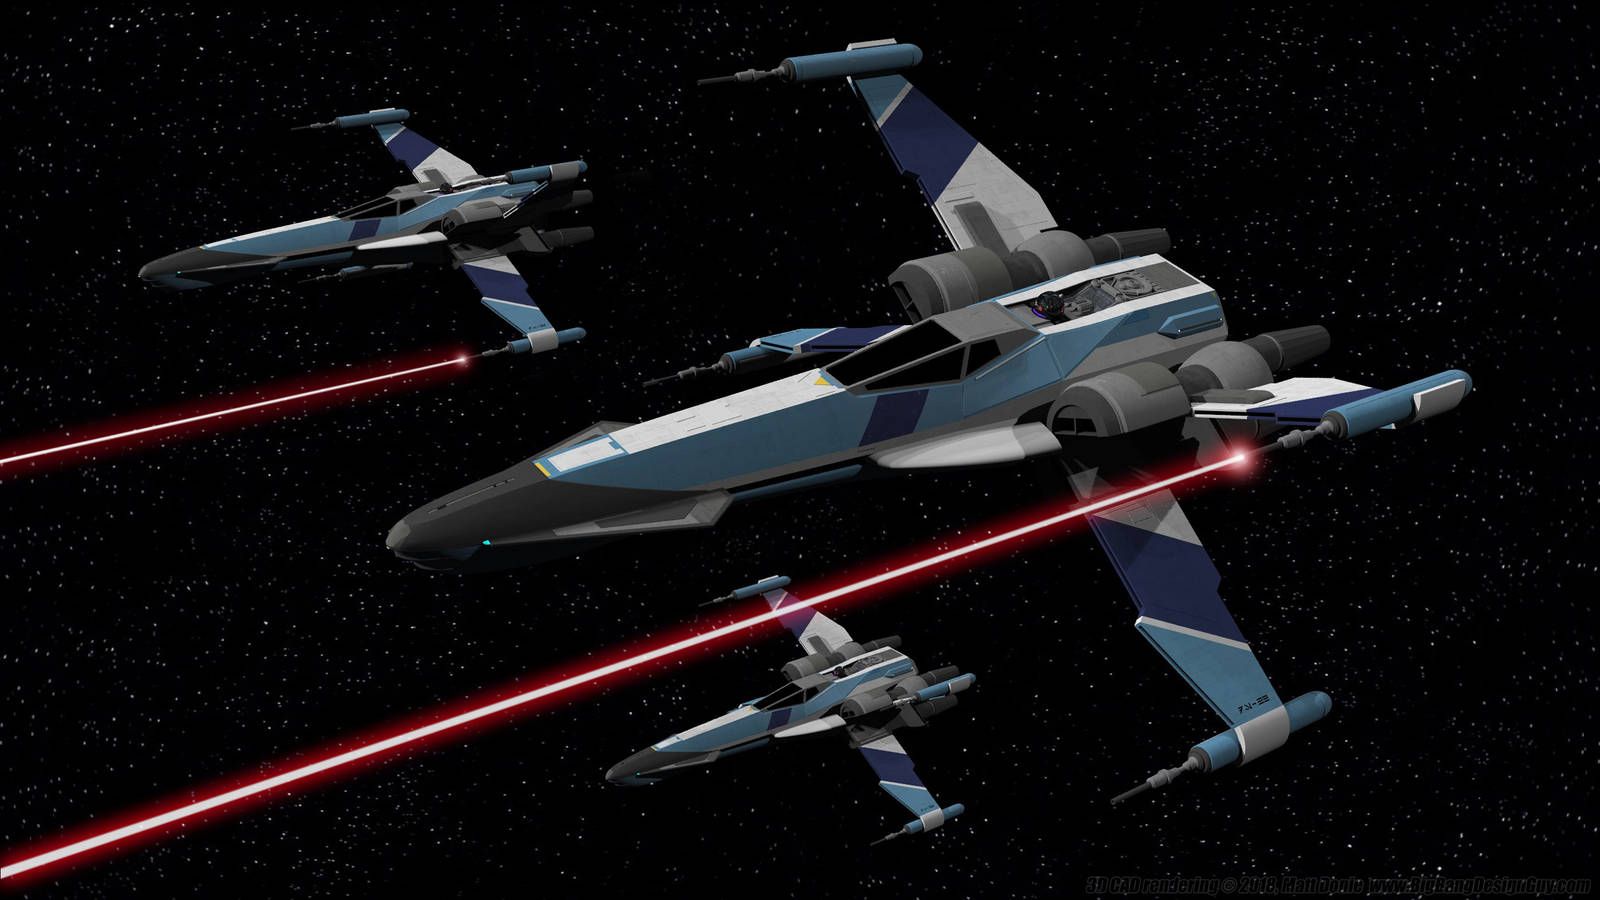 Star Wars Republic T 85 X Wing Starfighter. Star Wars Ships, Star Wars Vehicles, Star Wars Poster